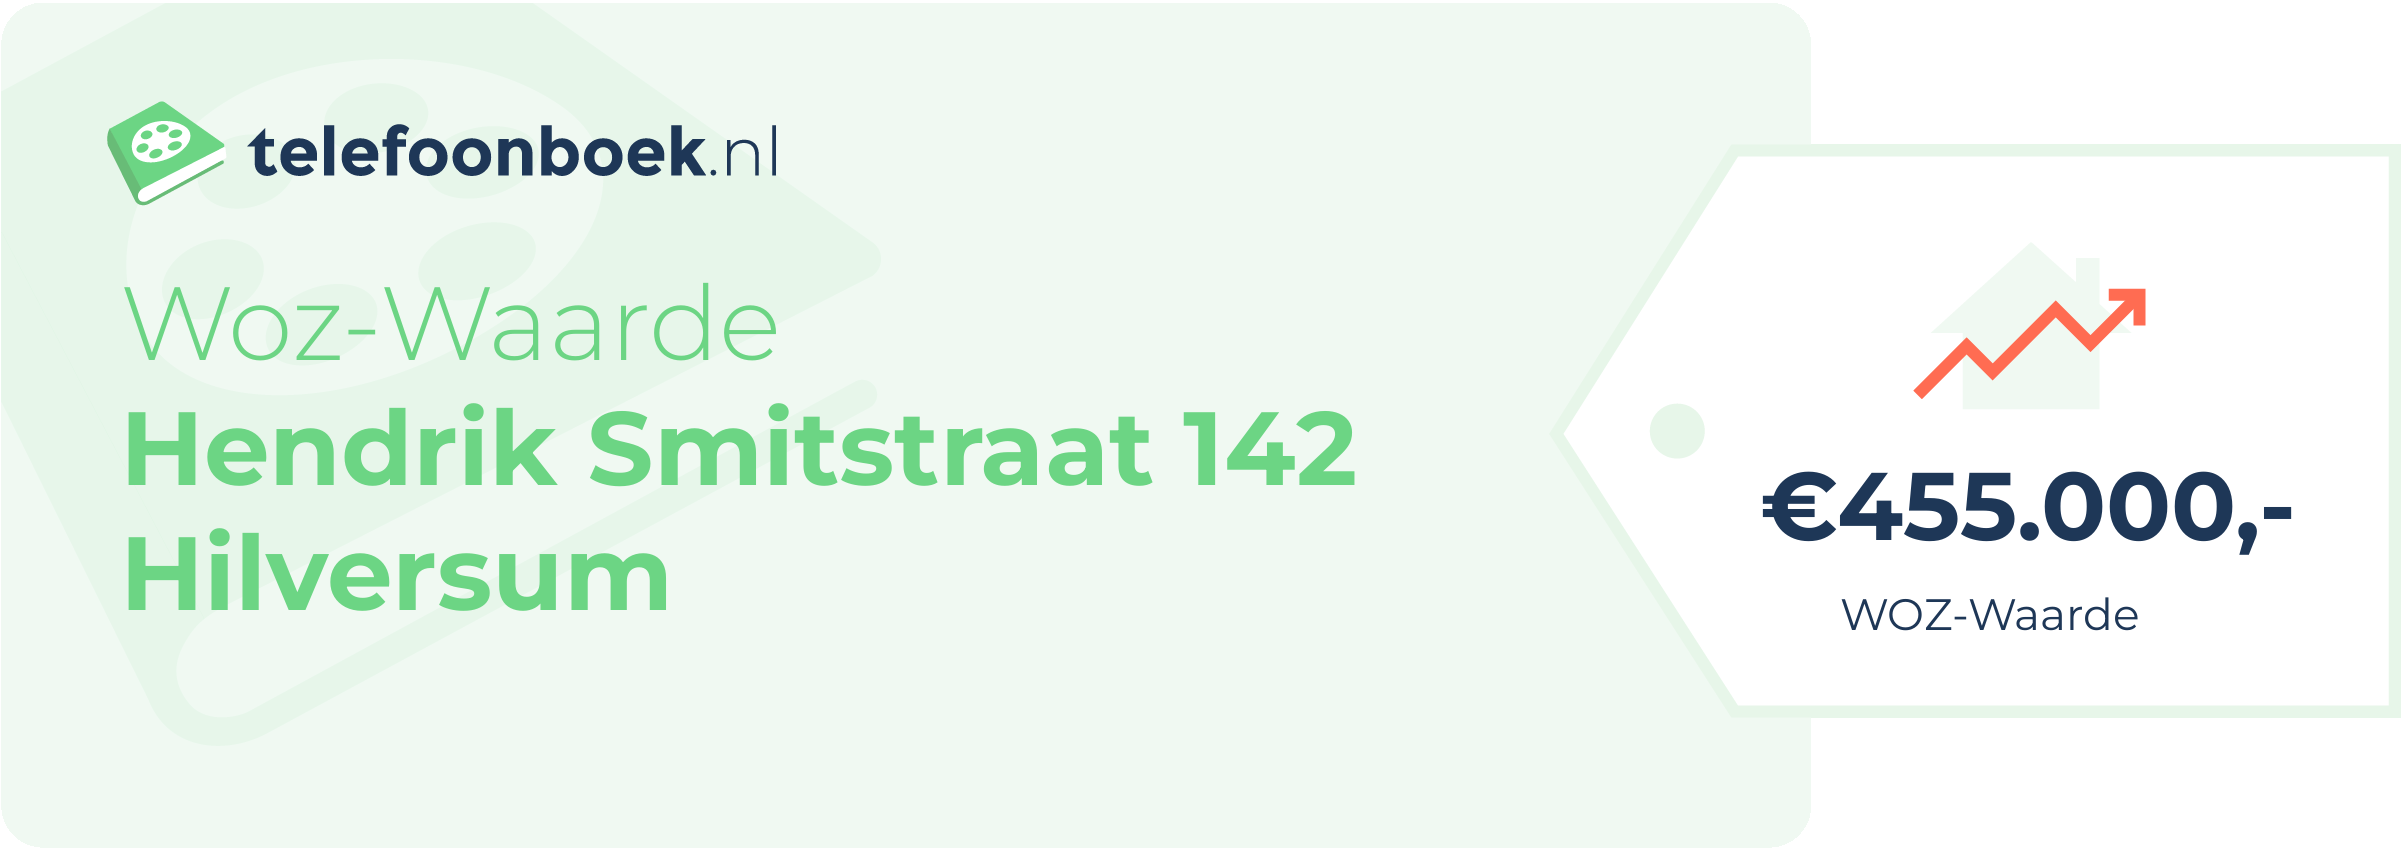 WOZ-waarde Hendrik Smitstraat 142 Hilversum